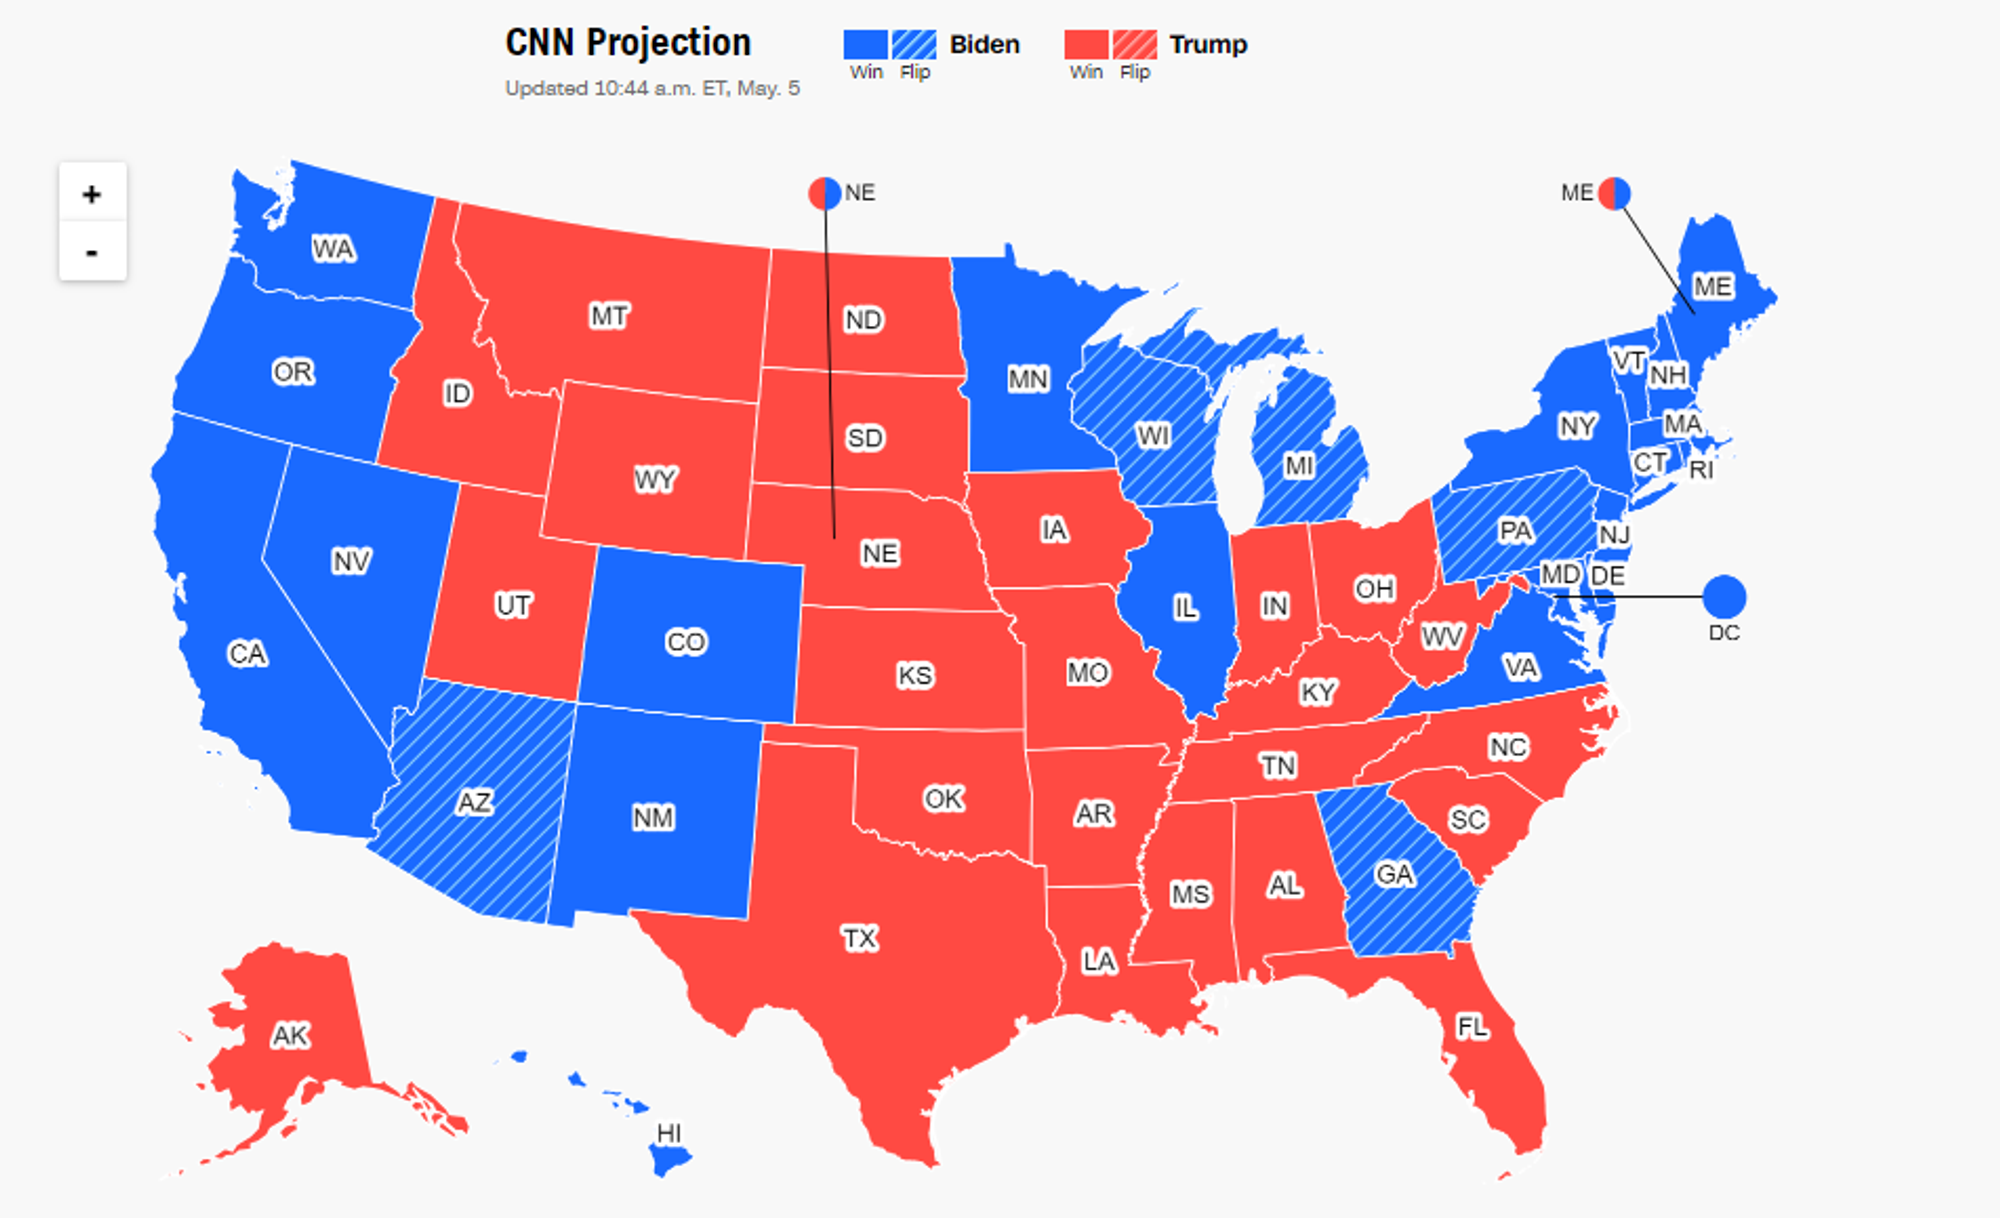 Résultats des élections de 2020 des États-Unis : CNN Politics, 46th presidential results source